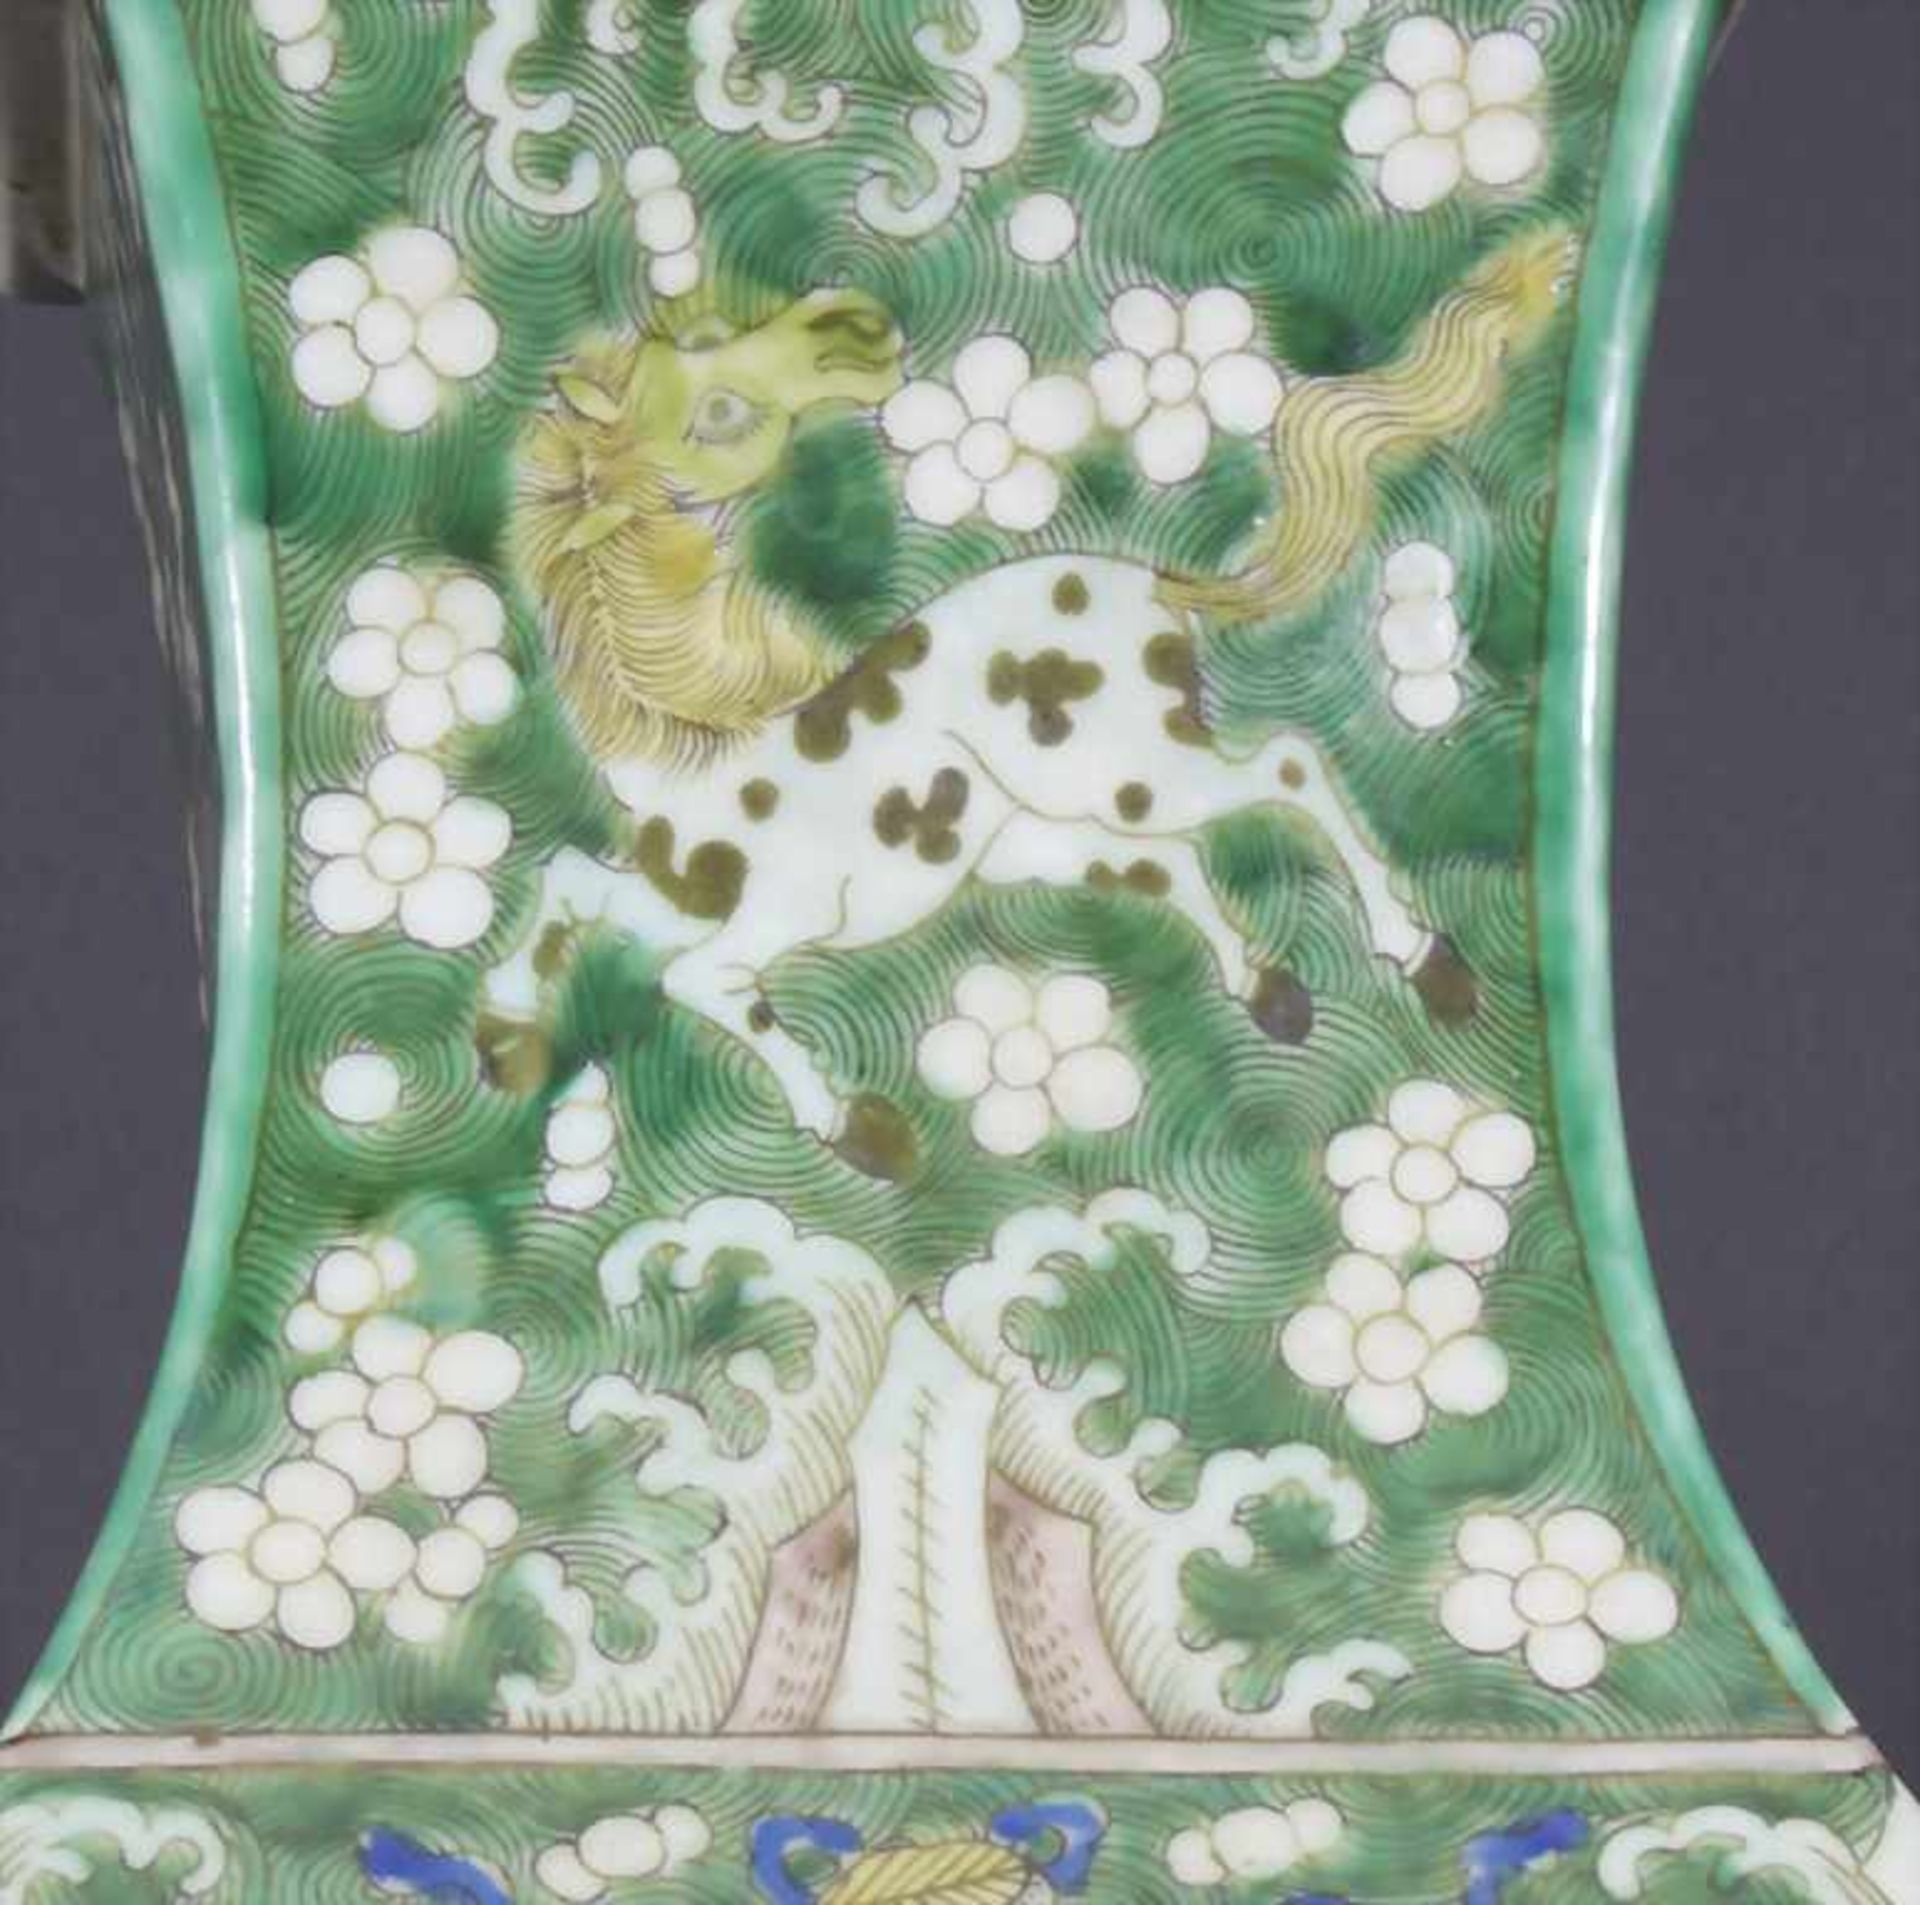 Ziervase, China, späte Qing-Dynastie, 19./20. Jh.Material: Porzellan, polychrom bemalt,Marke/ - Bild 8 aus 17